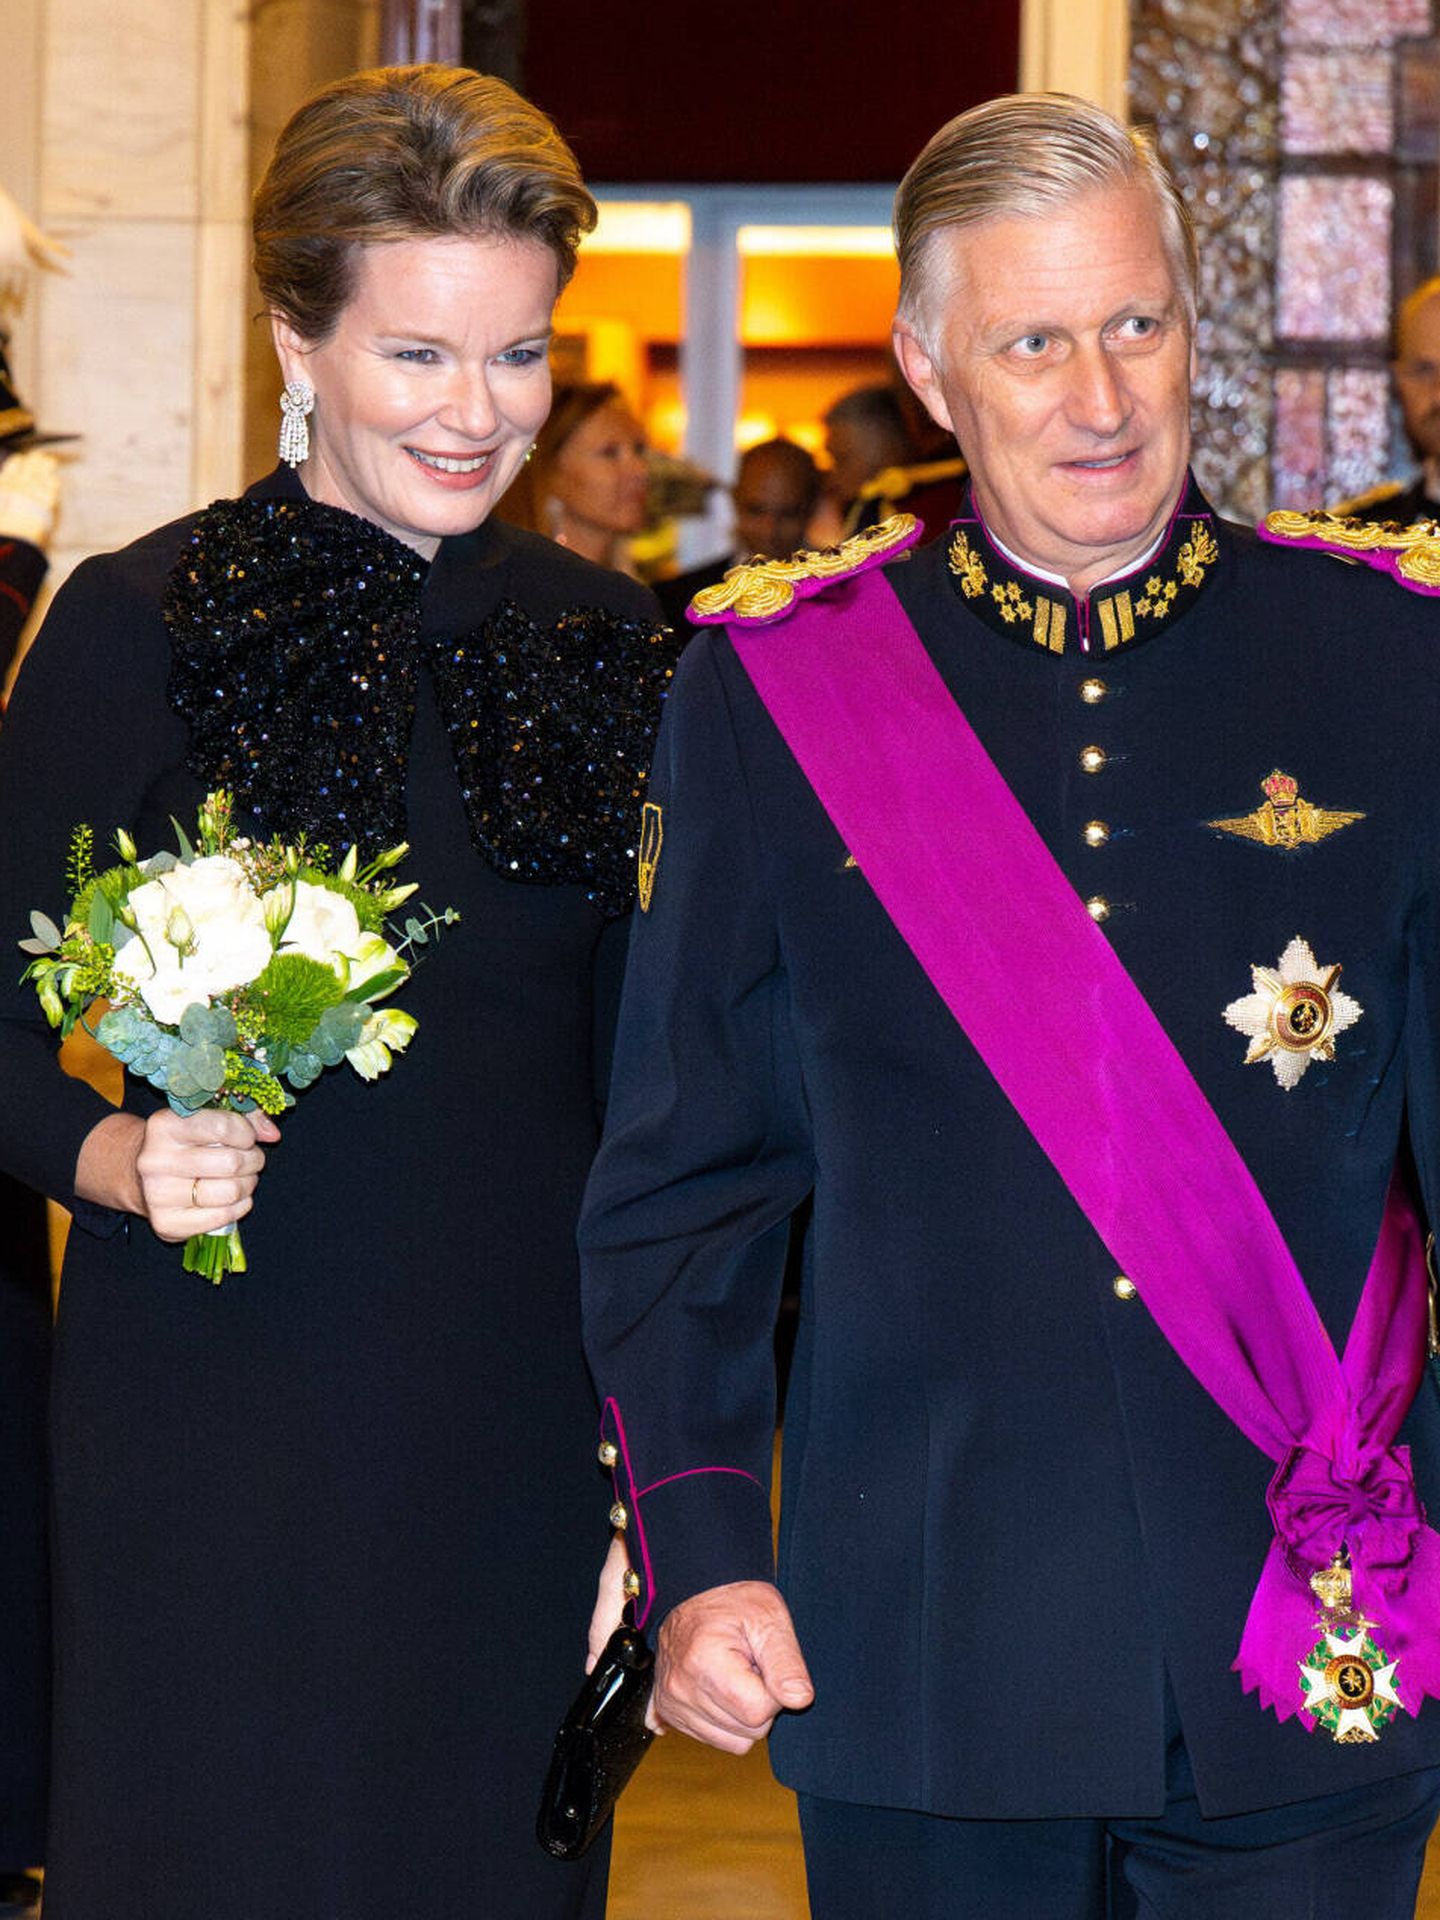 Matilde y Felipe de Bélgica asisten al concierto de gala en honor de su décimo aniversario en el trono. (Gtres)